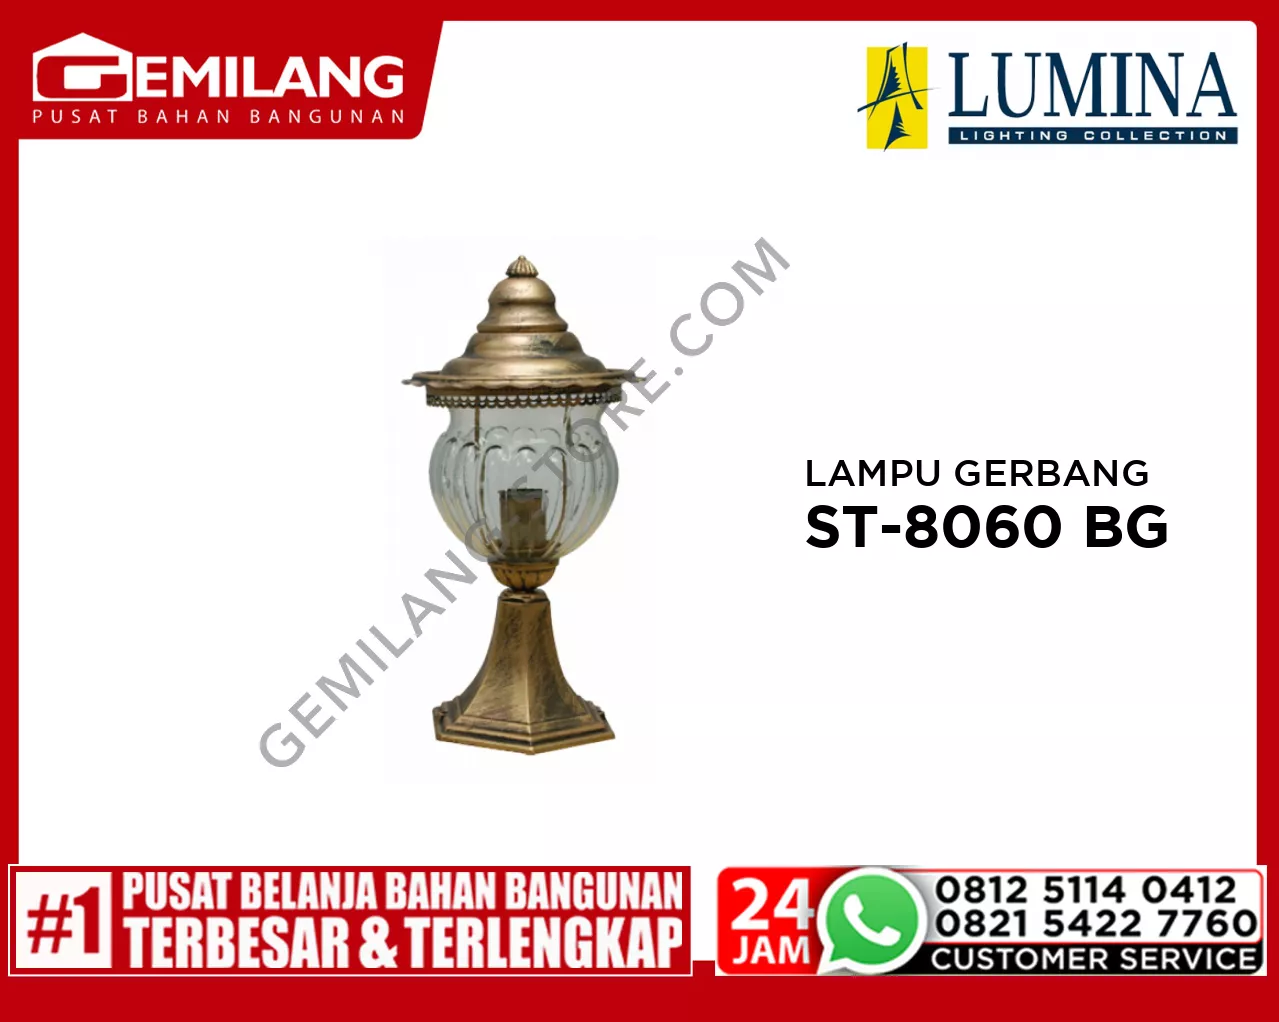 LAMPU GERBANG ST-8060 BG